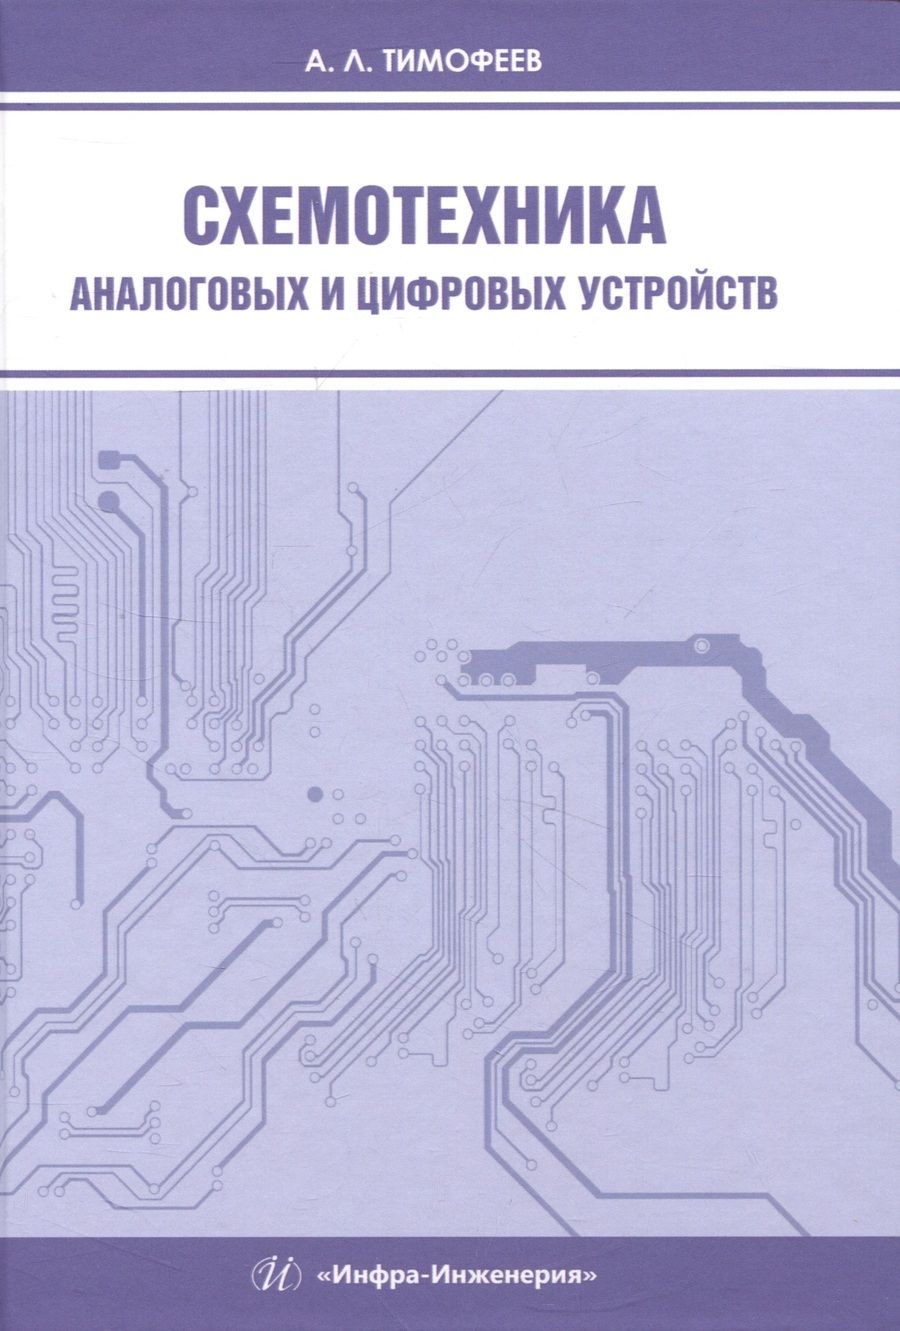 Обложка книги "Тимофеев: Схемотехника аналоговых и цифровых устройств. Учебное пособие"